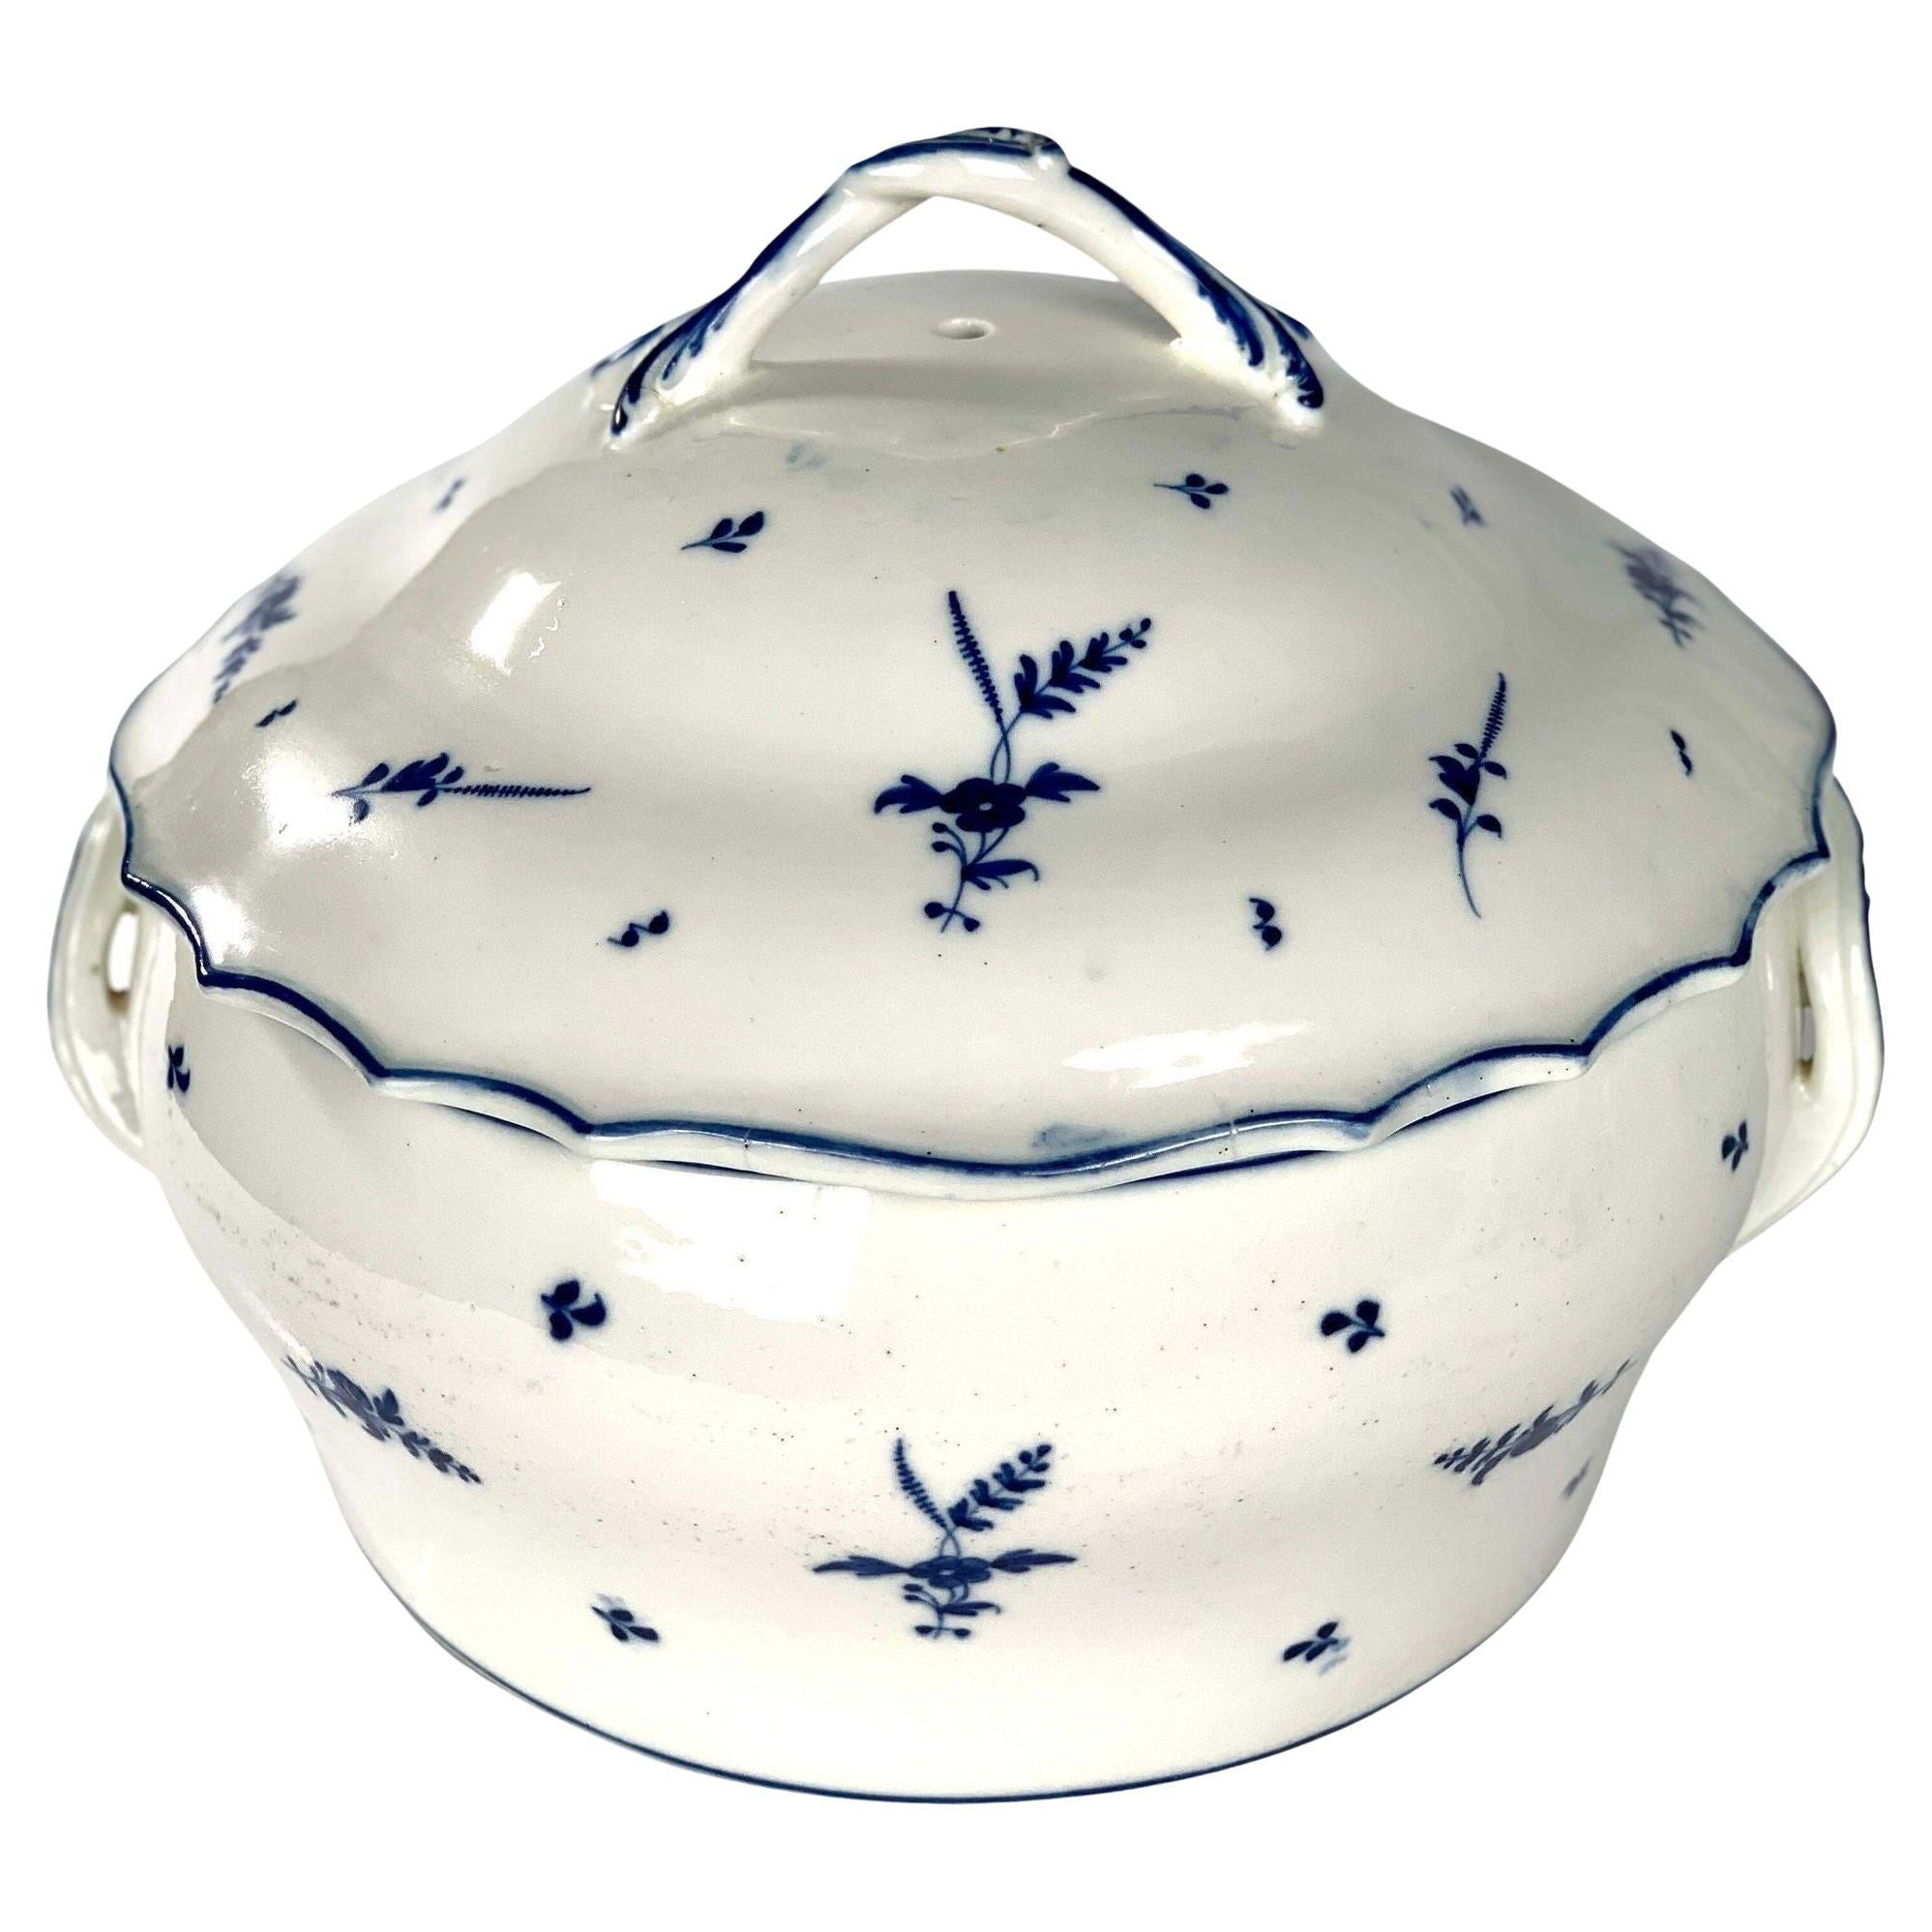 Grande soupière ronde en porcelaine bleue et blanche du 18ème siècle